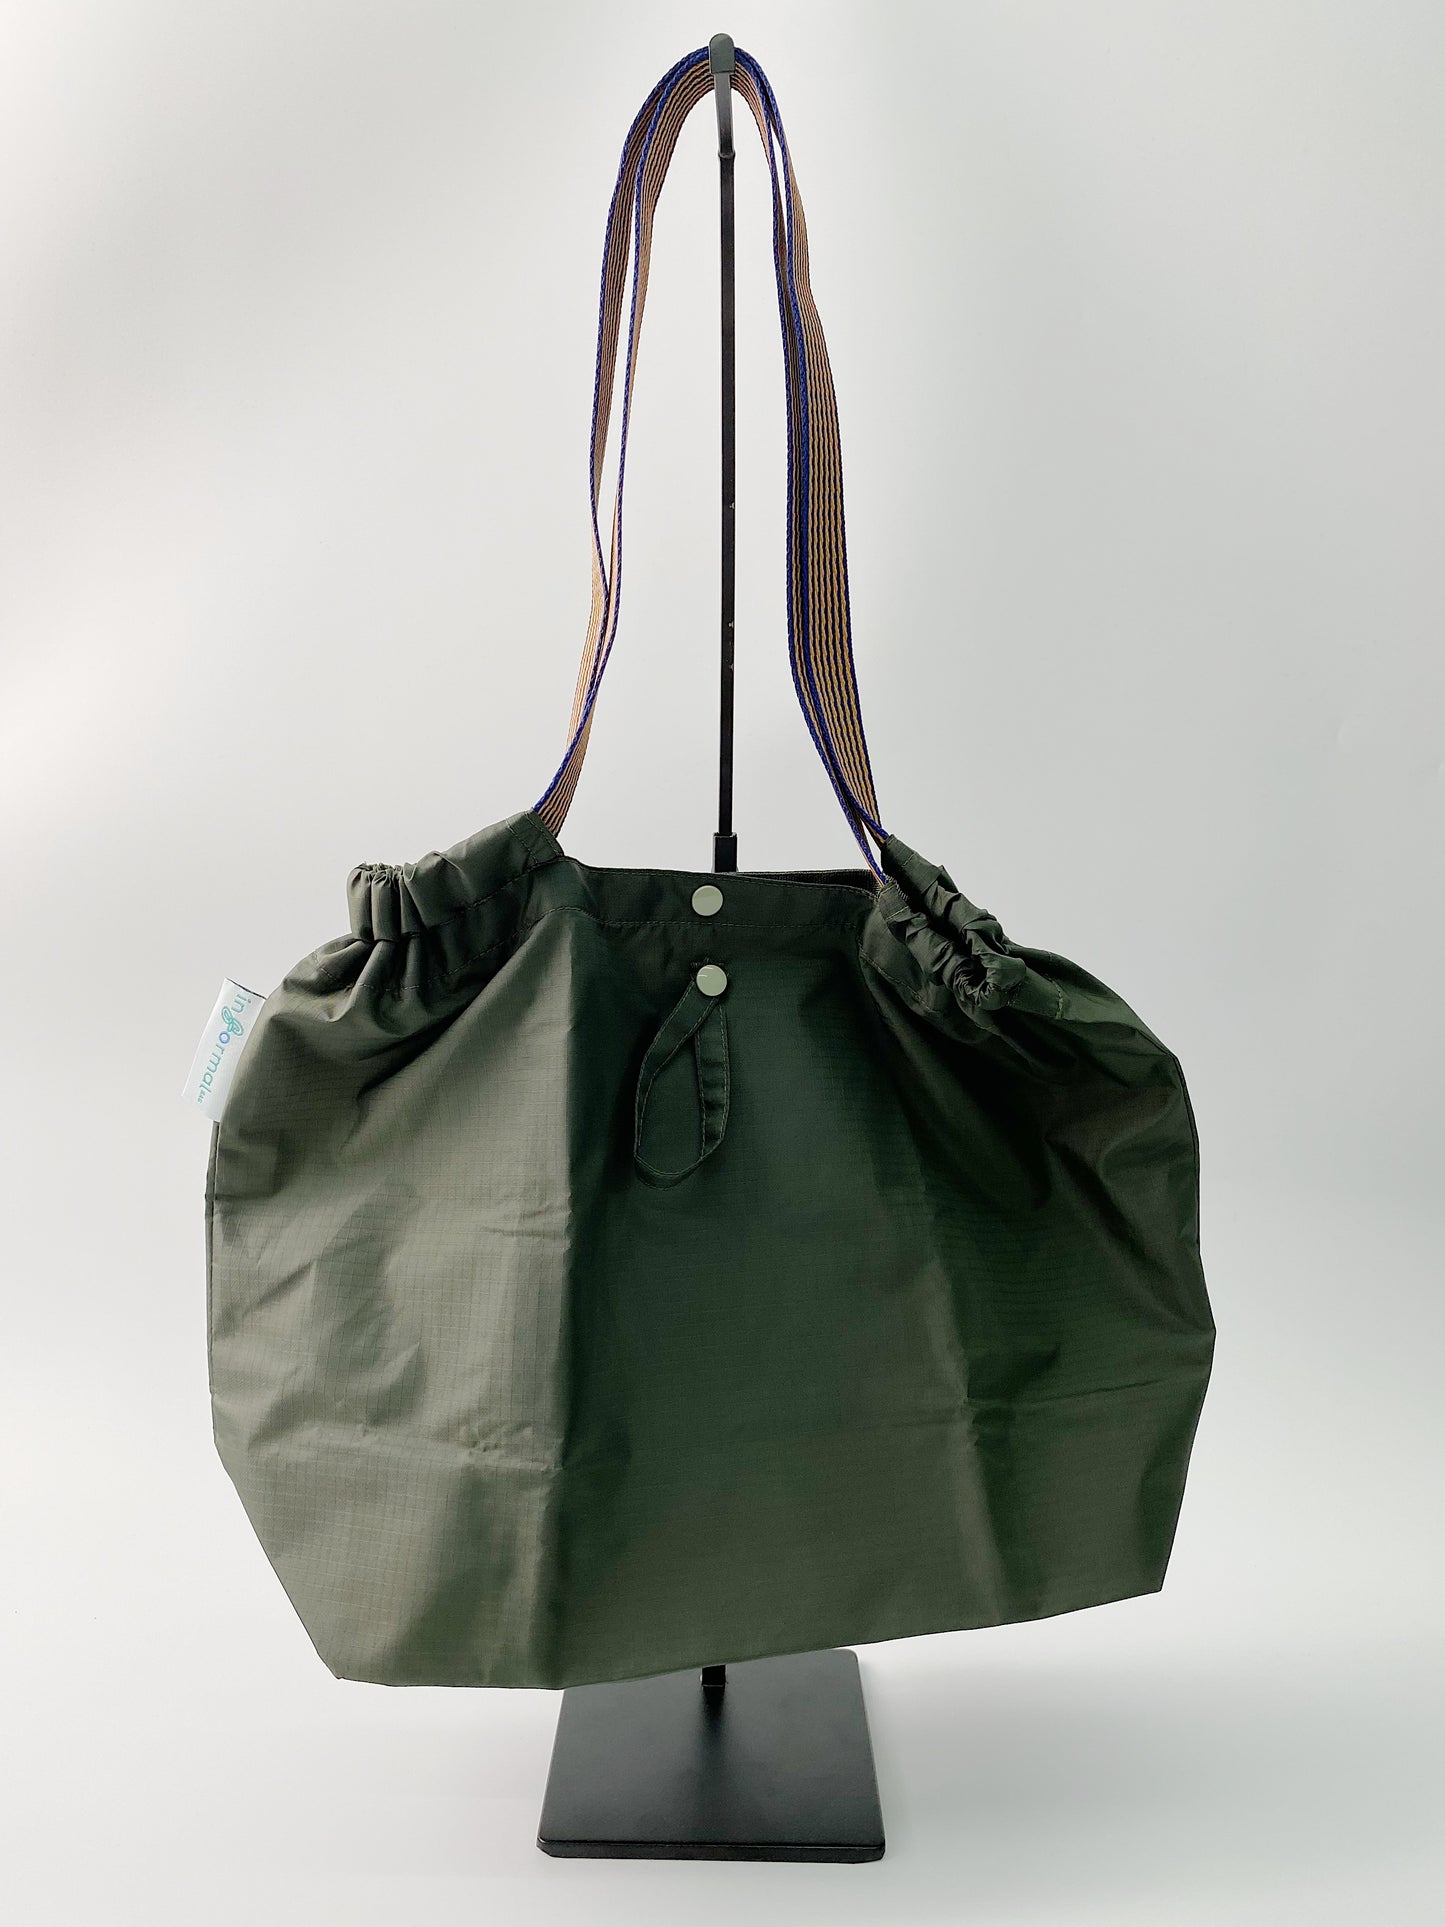 Informal Bag Plain Checkout Bag (Army Green)